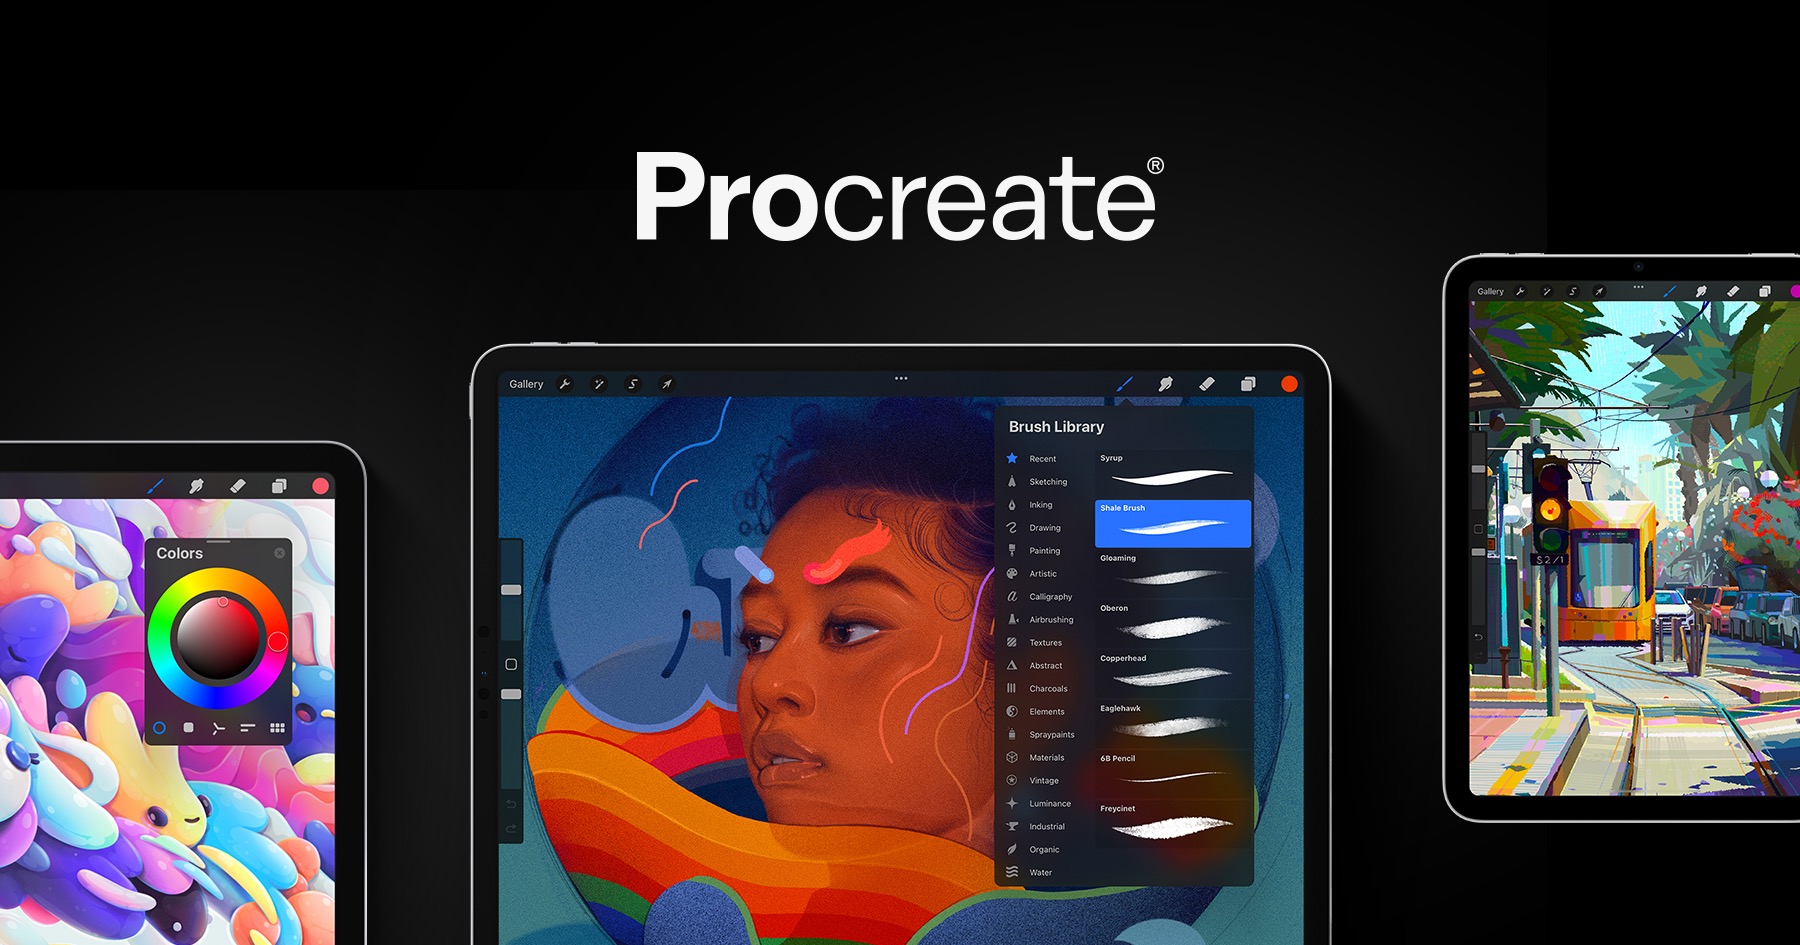 iPad app vẽ procreate: Sử dụng ứng dụng vẽ này trên iPad, bạn có thể \